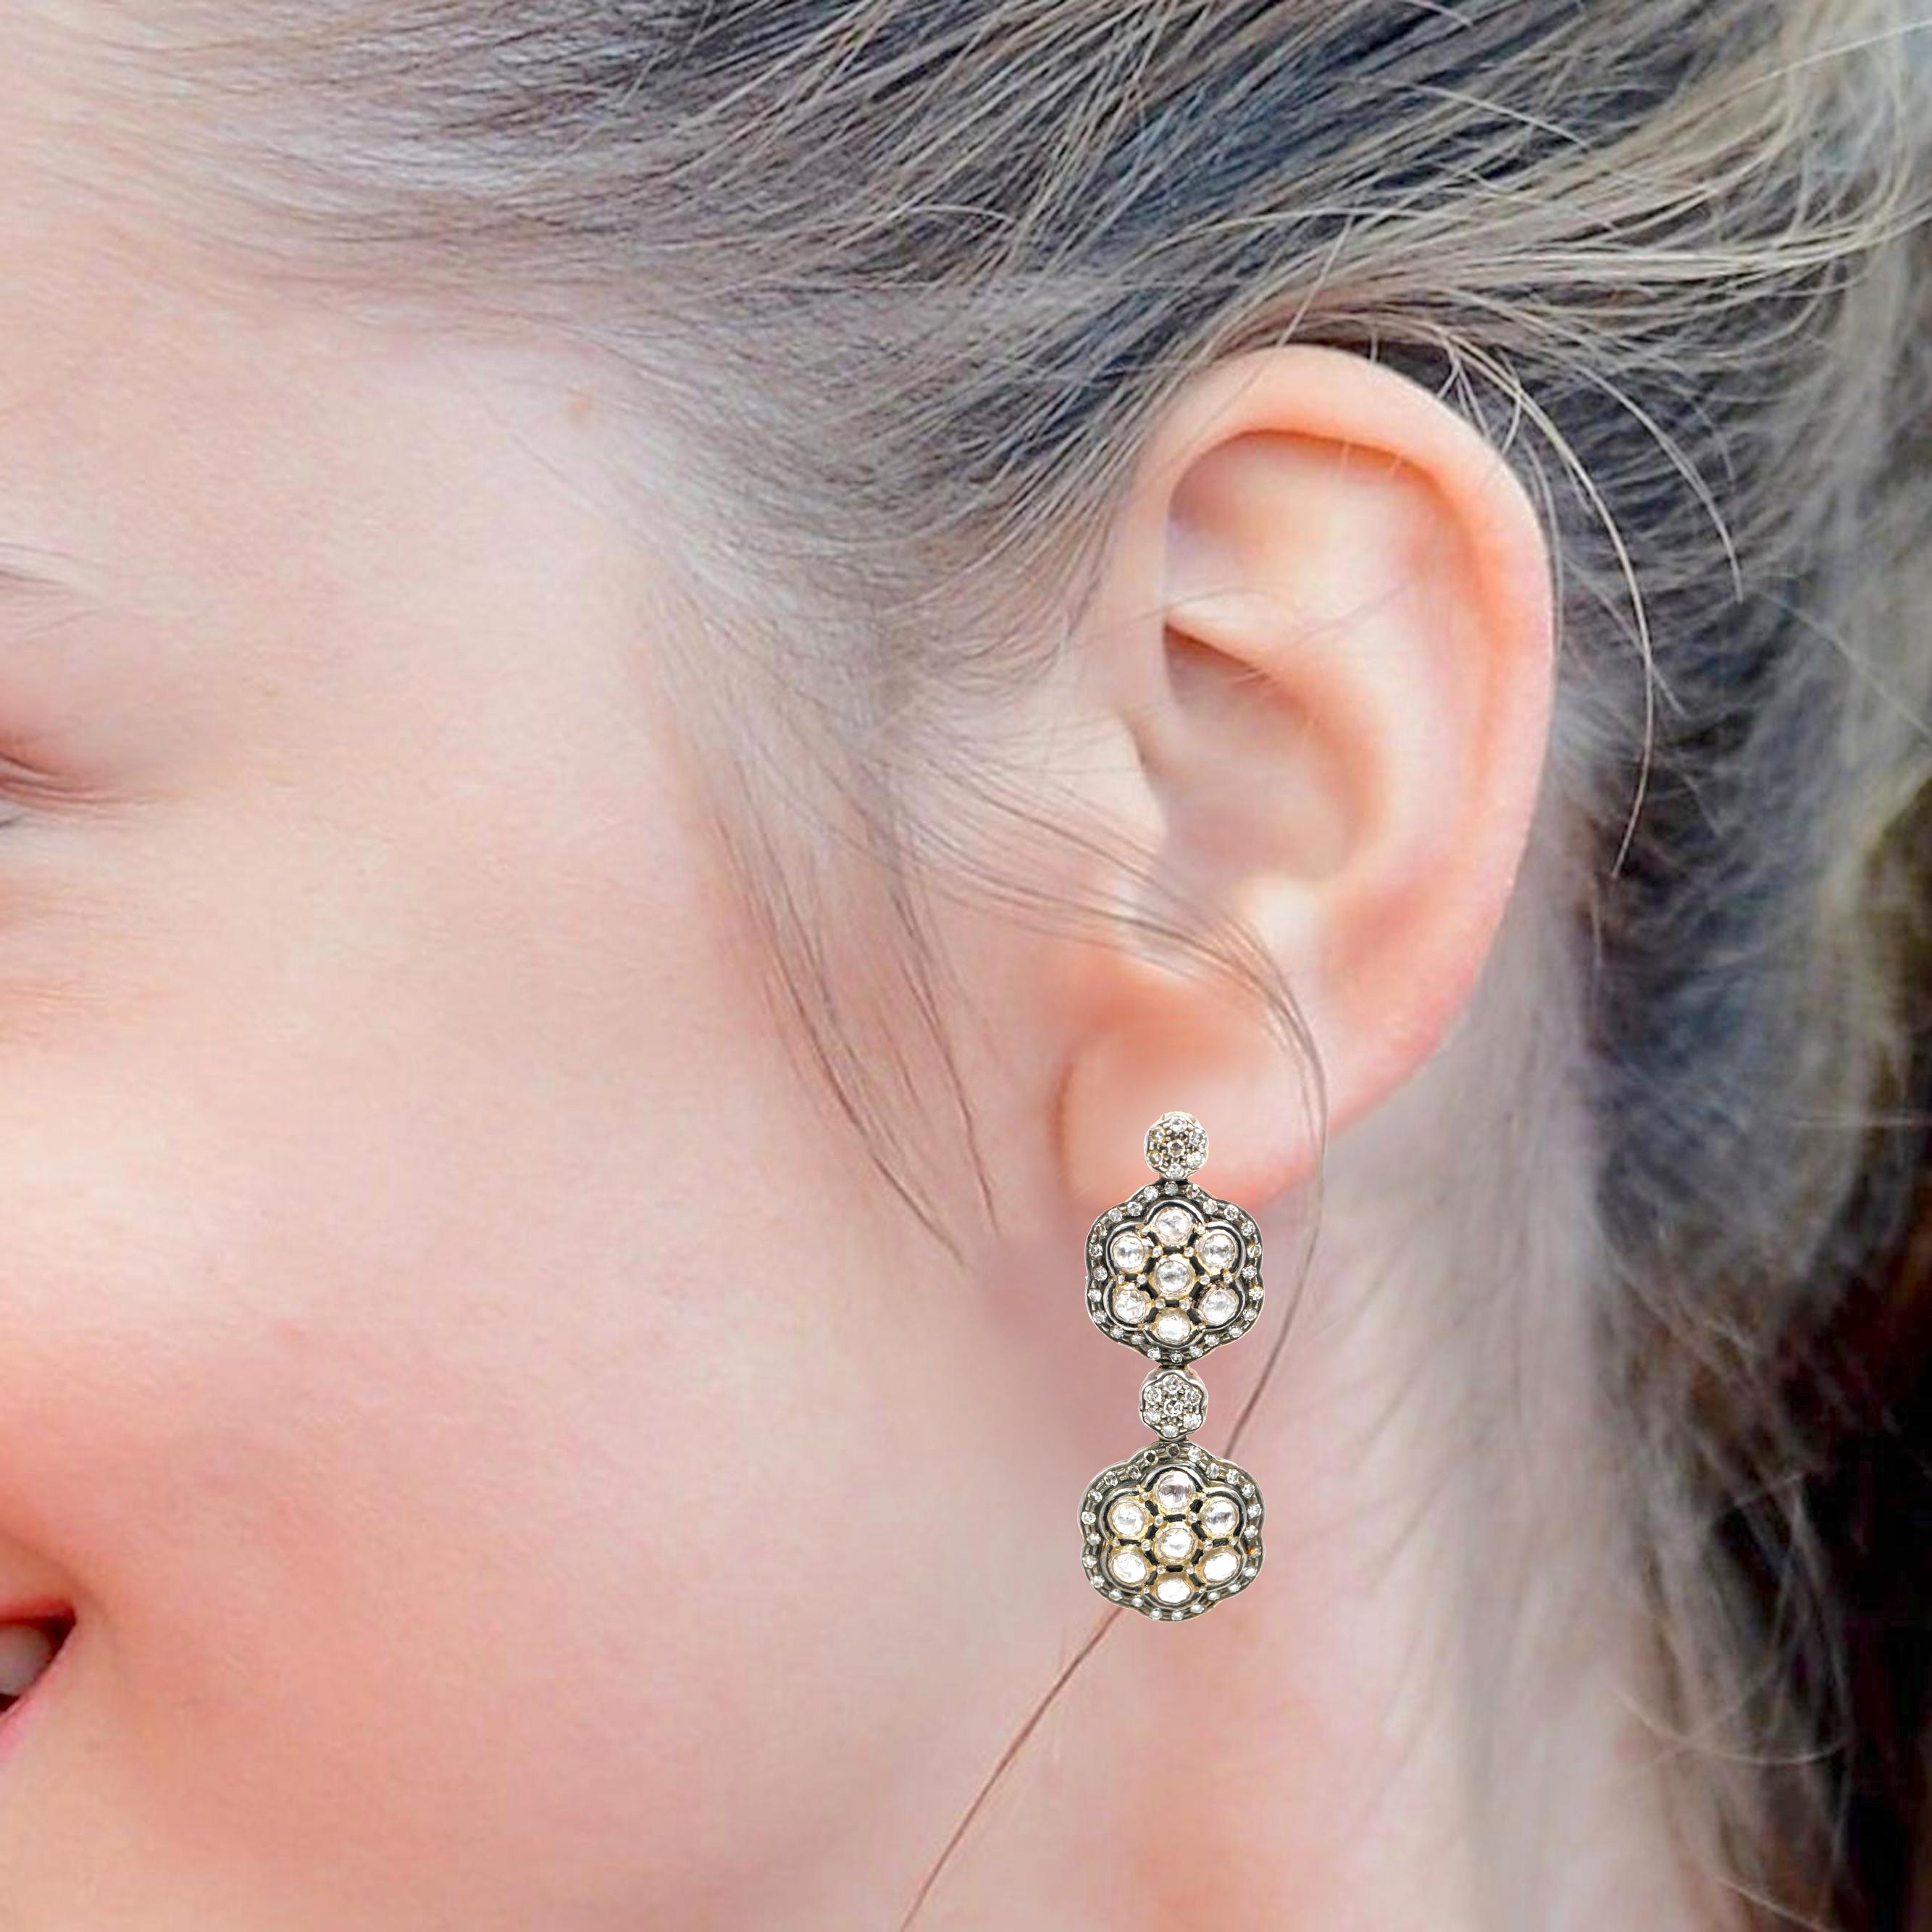 Ohrhänger mit Diamanten im viktorianischen Stil

Dieser atypische Polki-Diamant-Ohrring aus der viktorianischen Zeit des Art déco ist beeindruckend. Der Solitär, ein geschlossen gefasster Polki-Diamant mit dazwischen liegenden Zacken, bildet